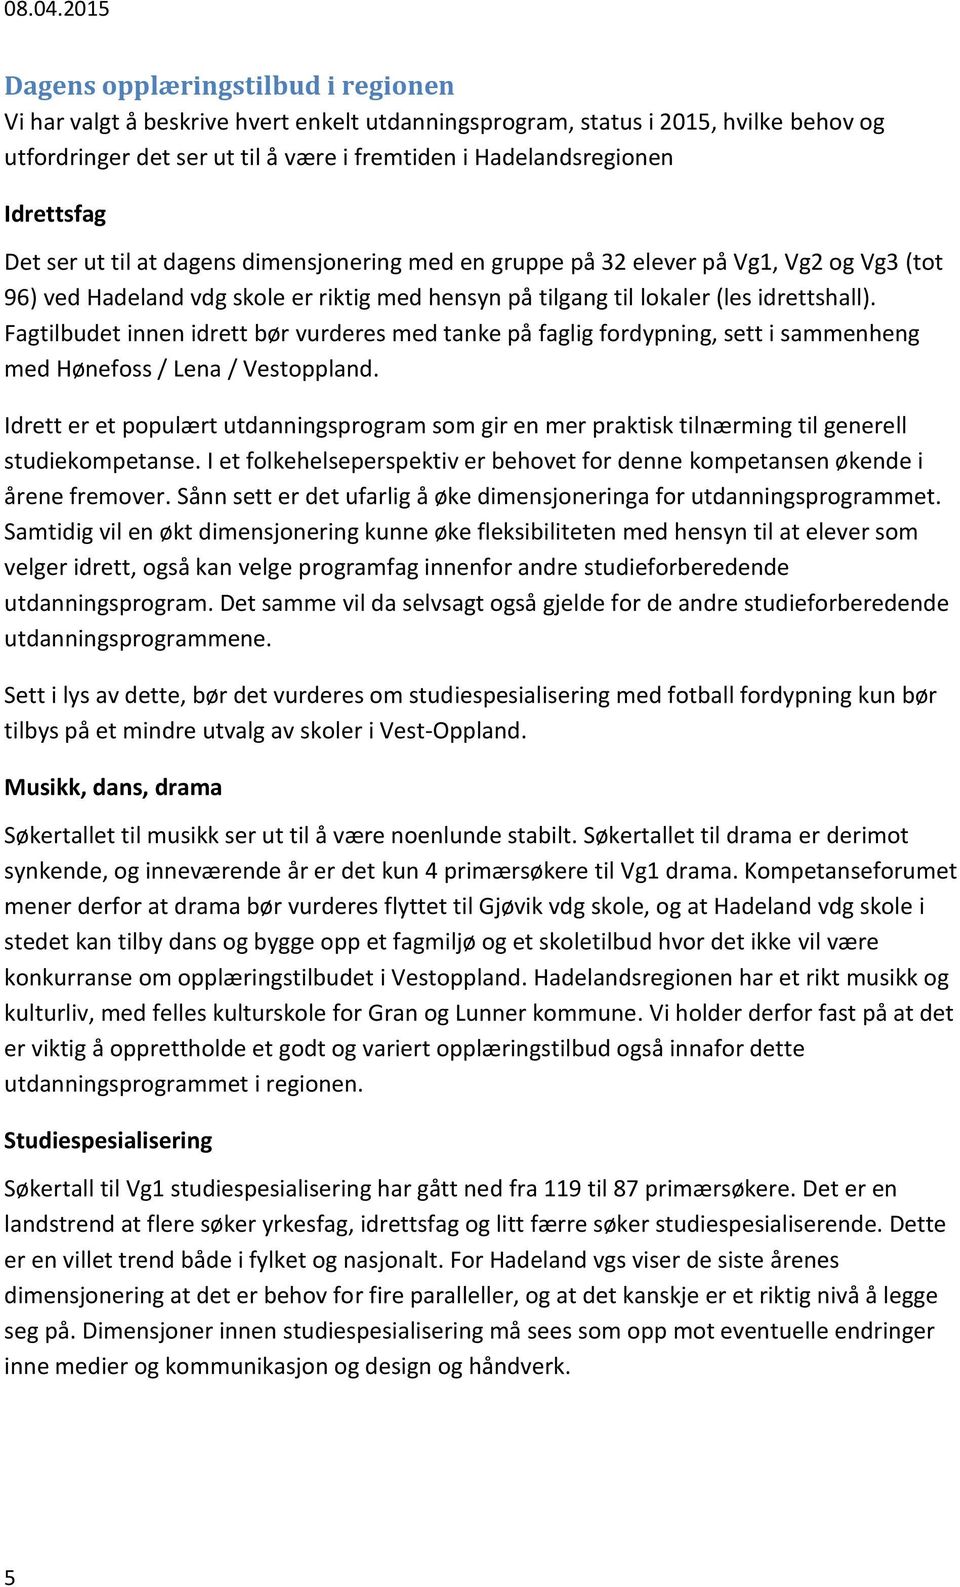 Fagtilbudet innen idrett bør vurderes med tanke på faglig fordypning, sett i sammenheng med Hønefoss / Lena / Vestoppland.